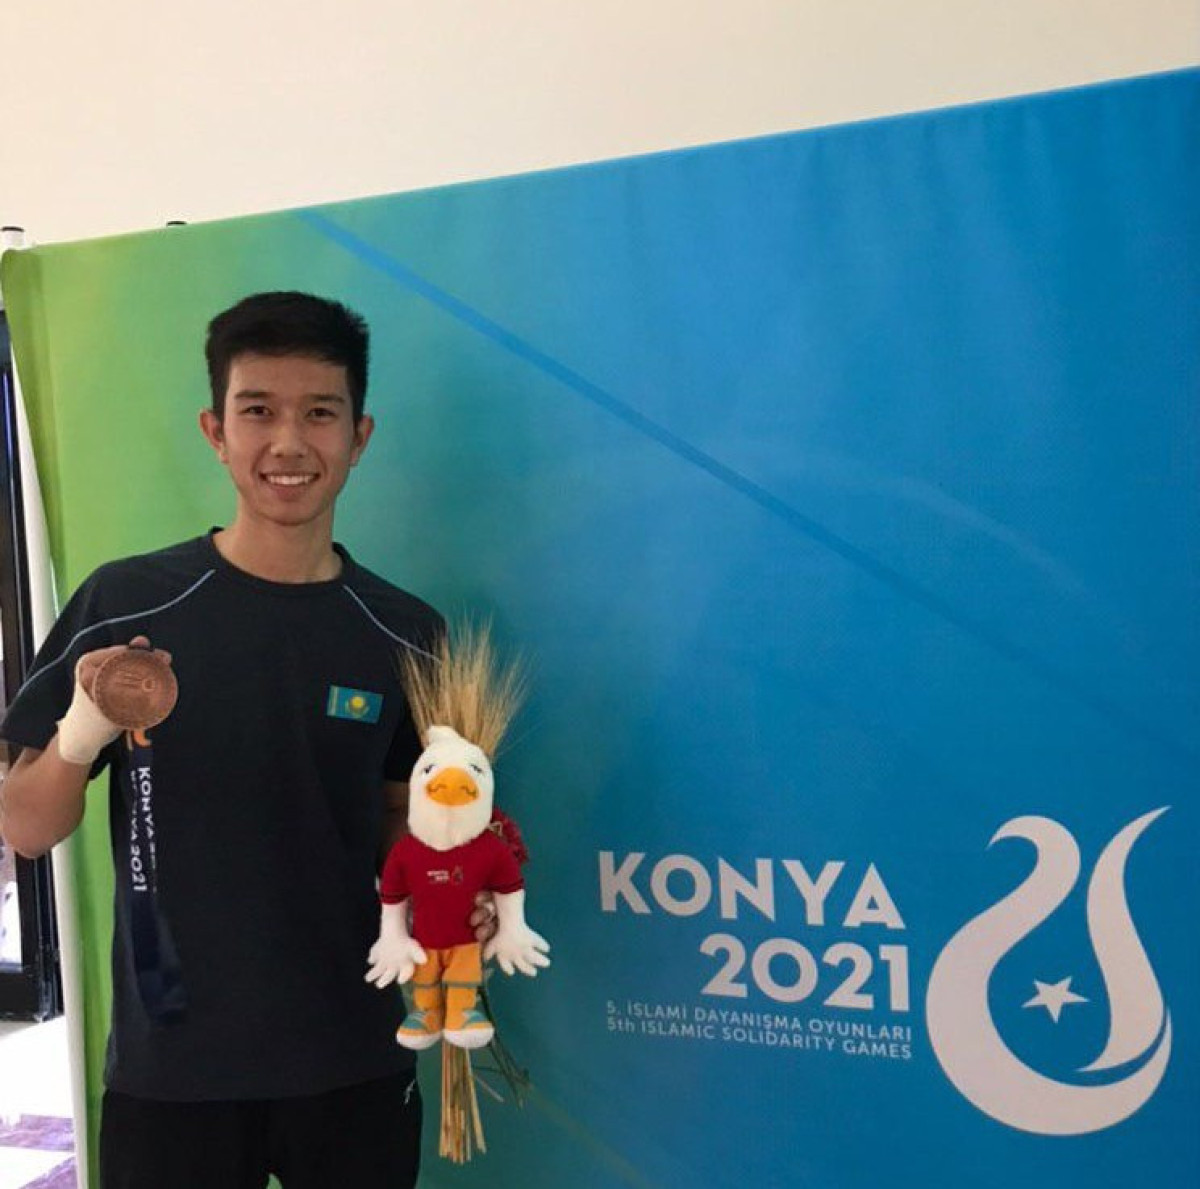 РК выиграла первую медаль по таеквондо на Играх исламской солидарности